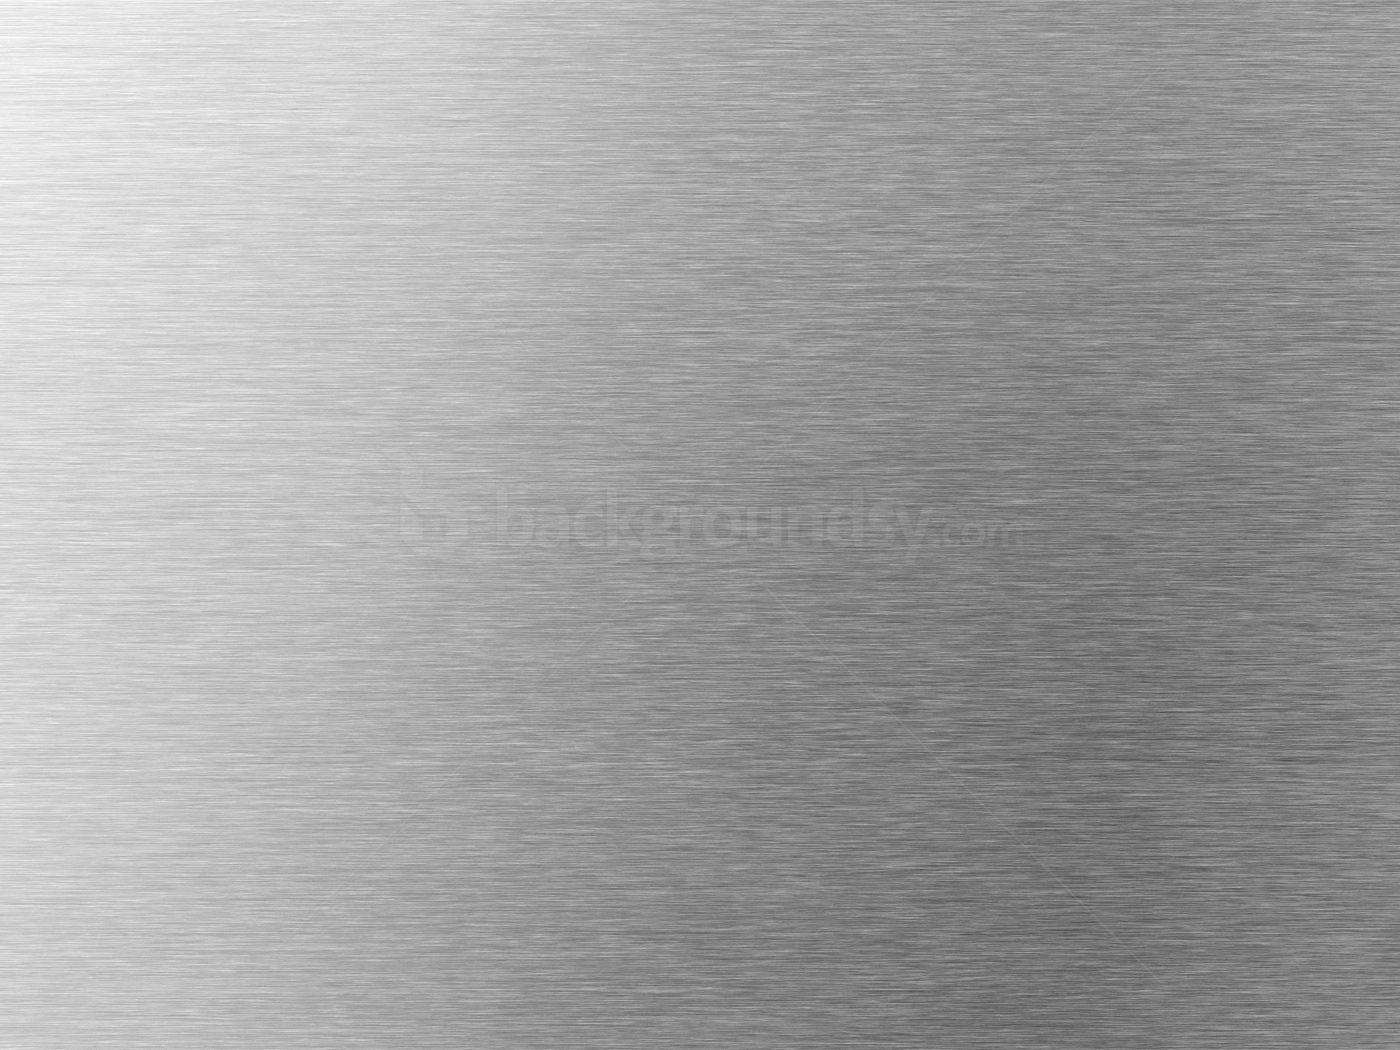 Steel Pattern HD desktop wallpaper, High Definition, Fullscreen